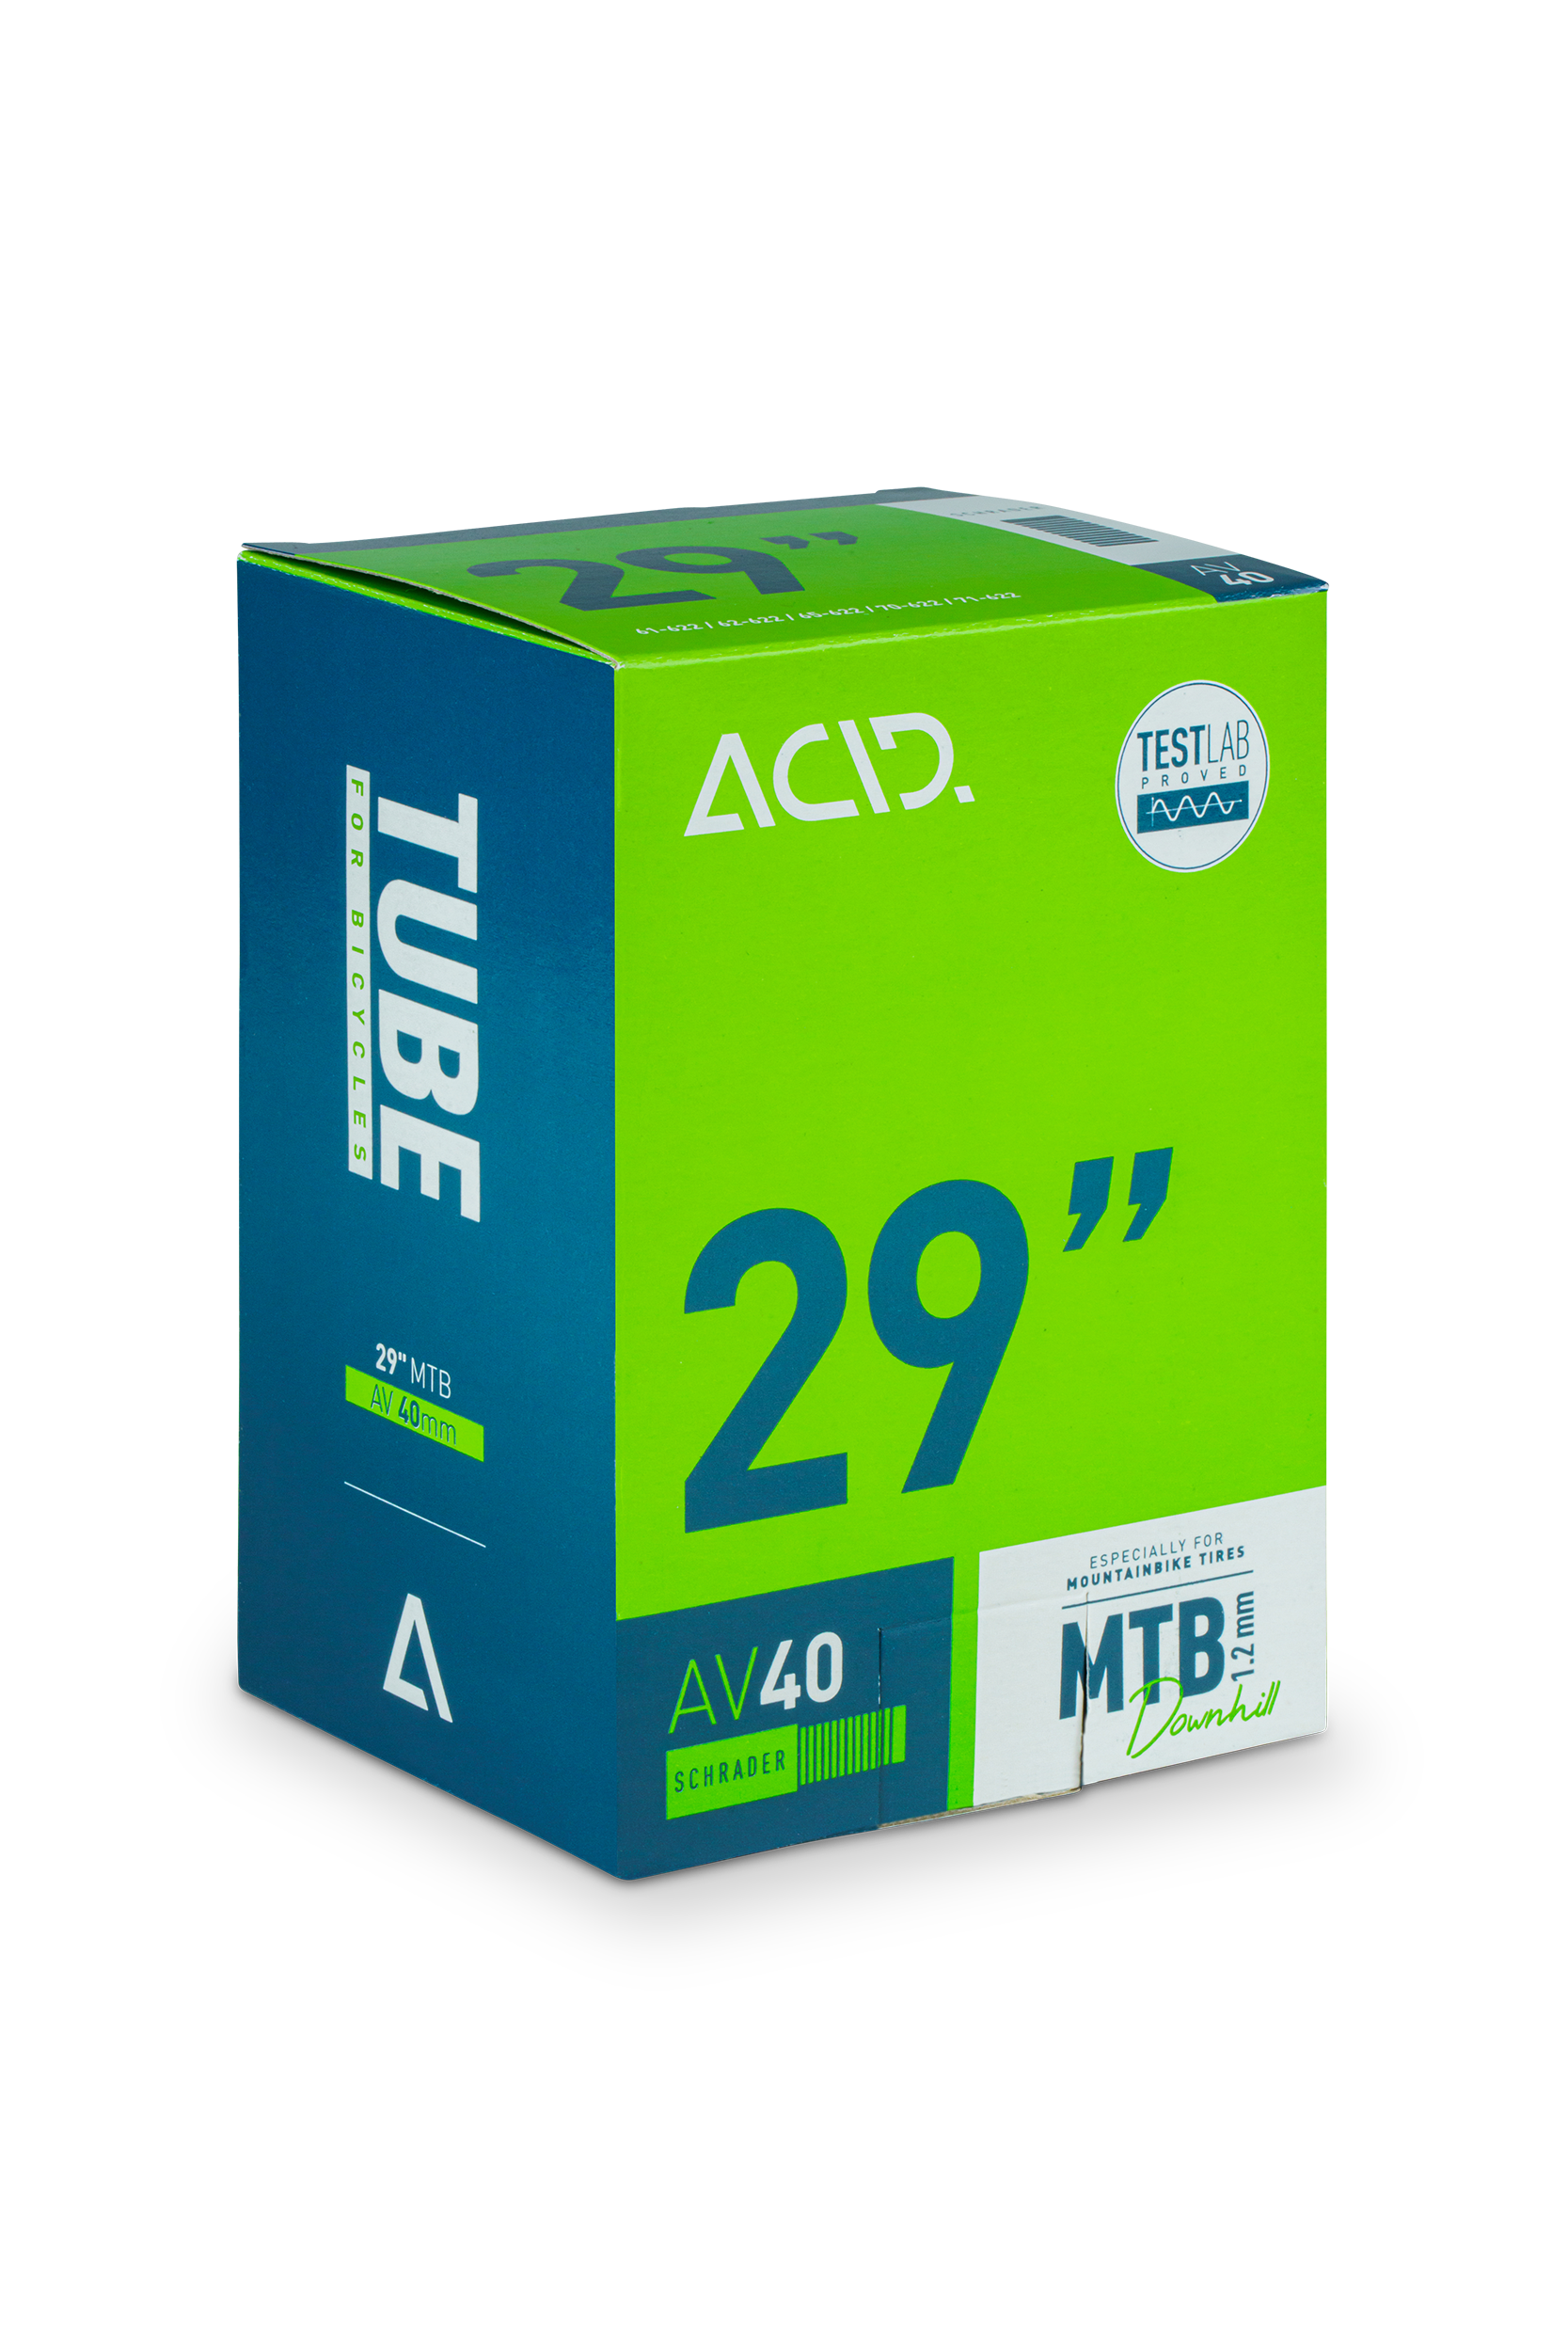 ACID Tube 29" MTB Downhill AGV 40mm